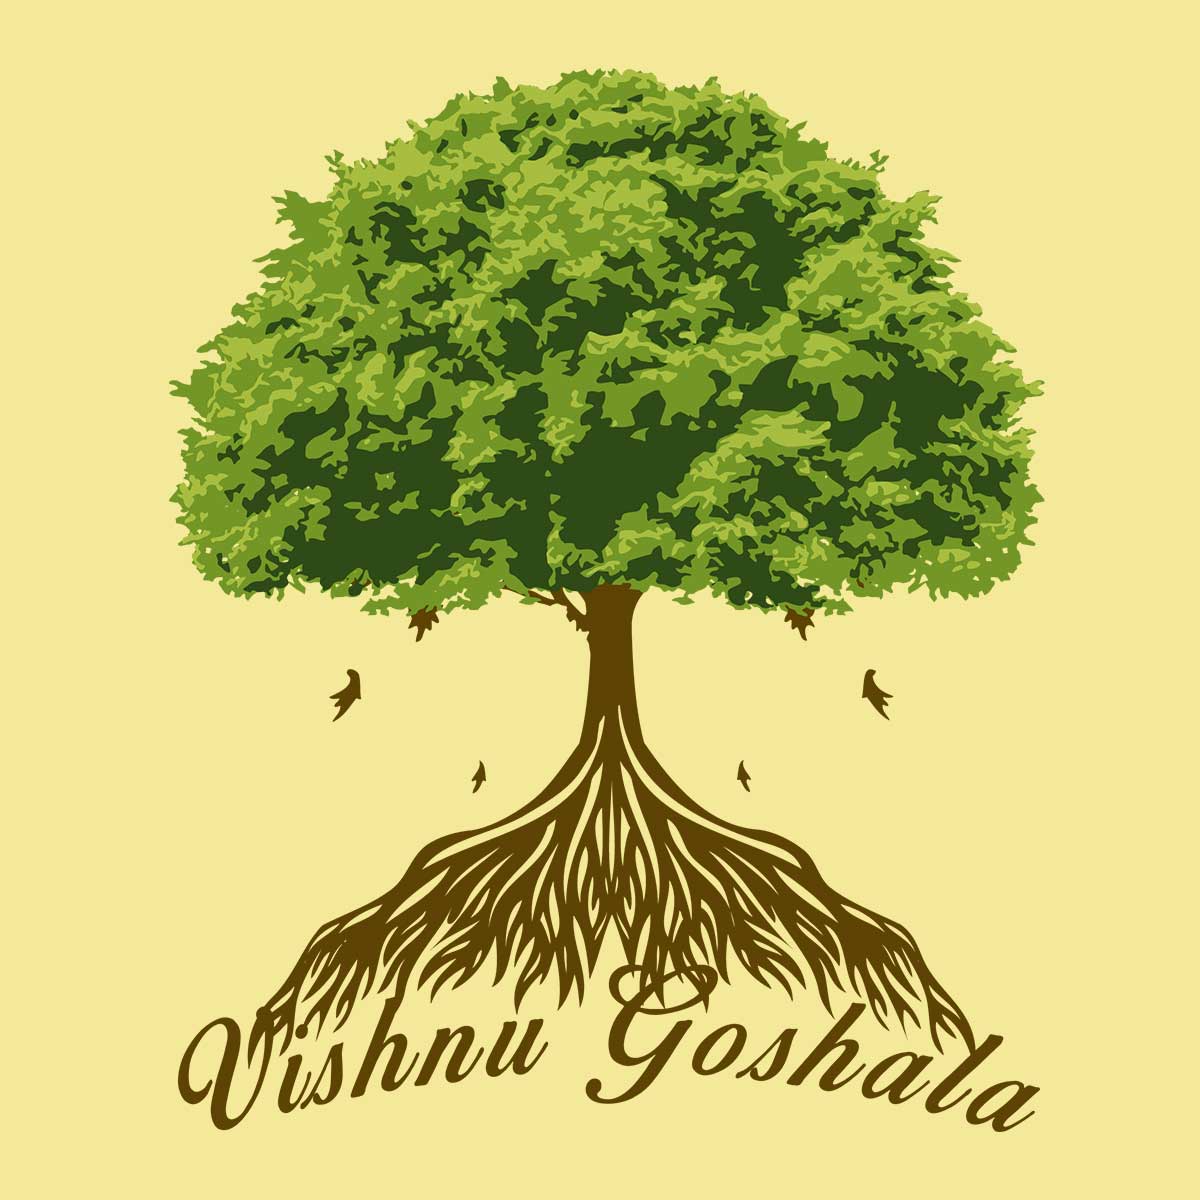 Logo para Vishnu Goshala